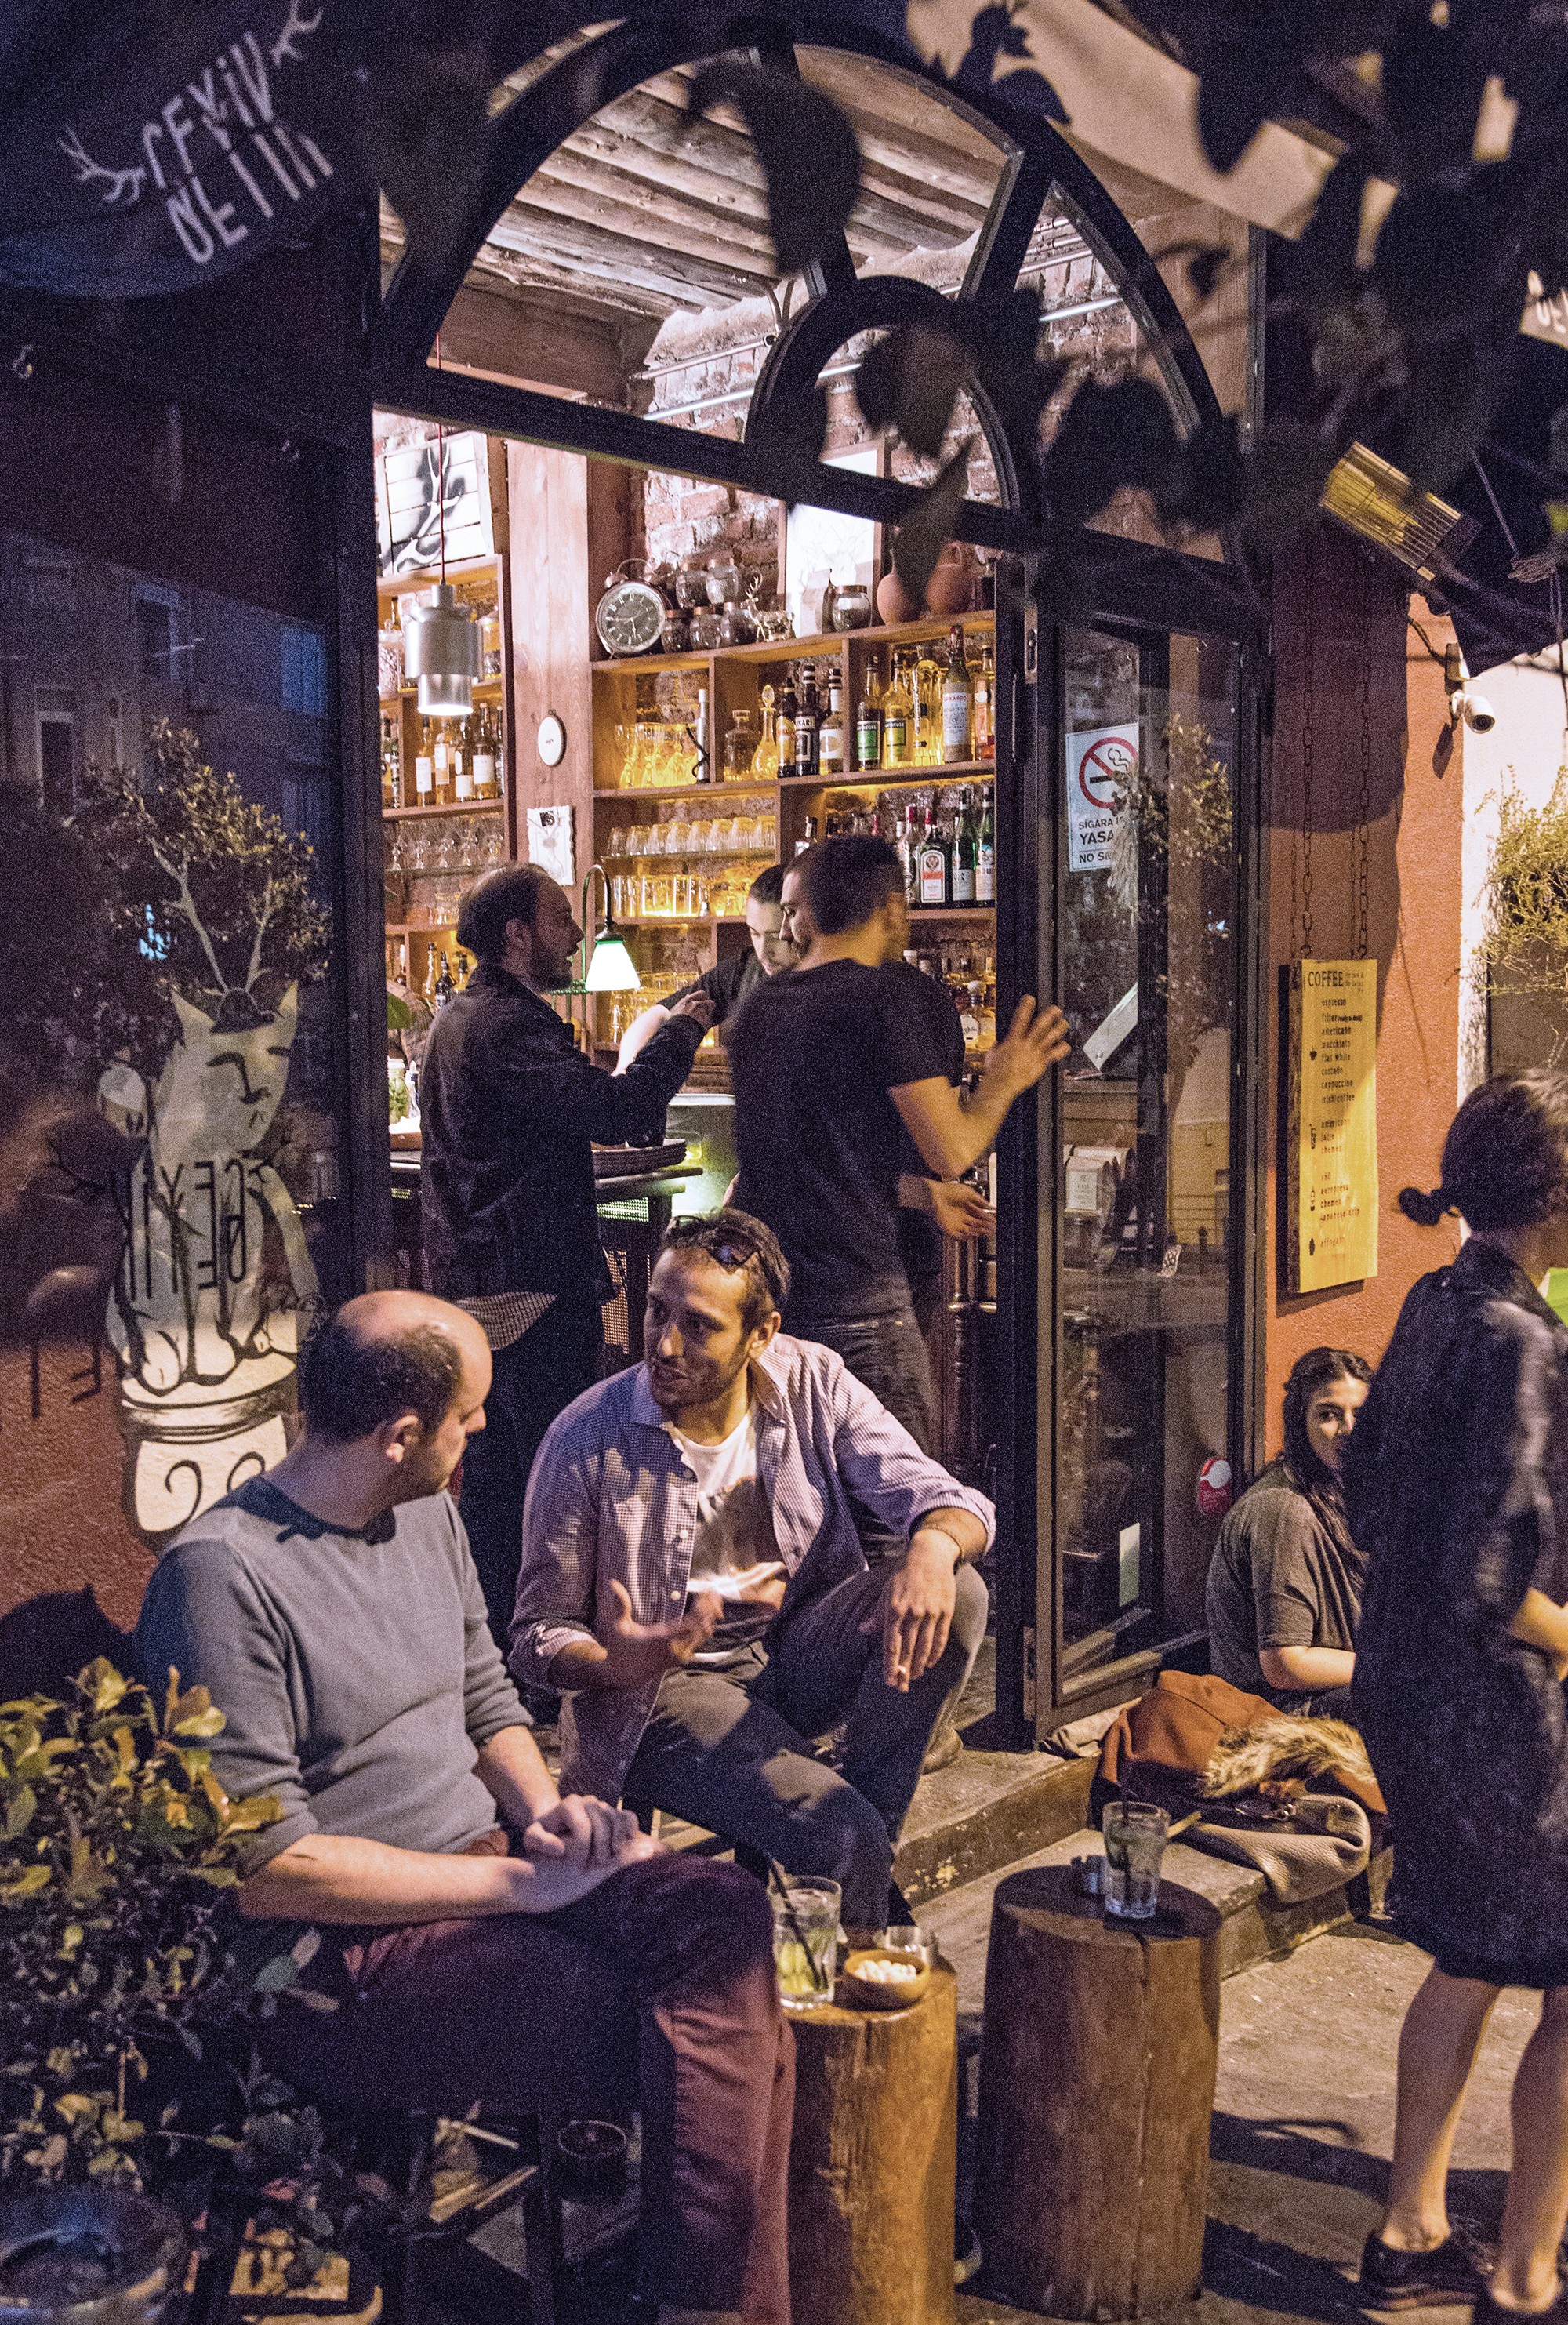 Banho de sabor turco: o agito do bar Geyik.  (Foto: divulgação)